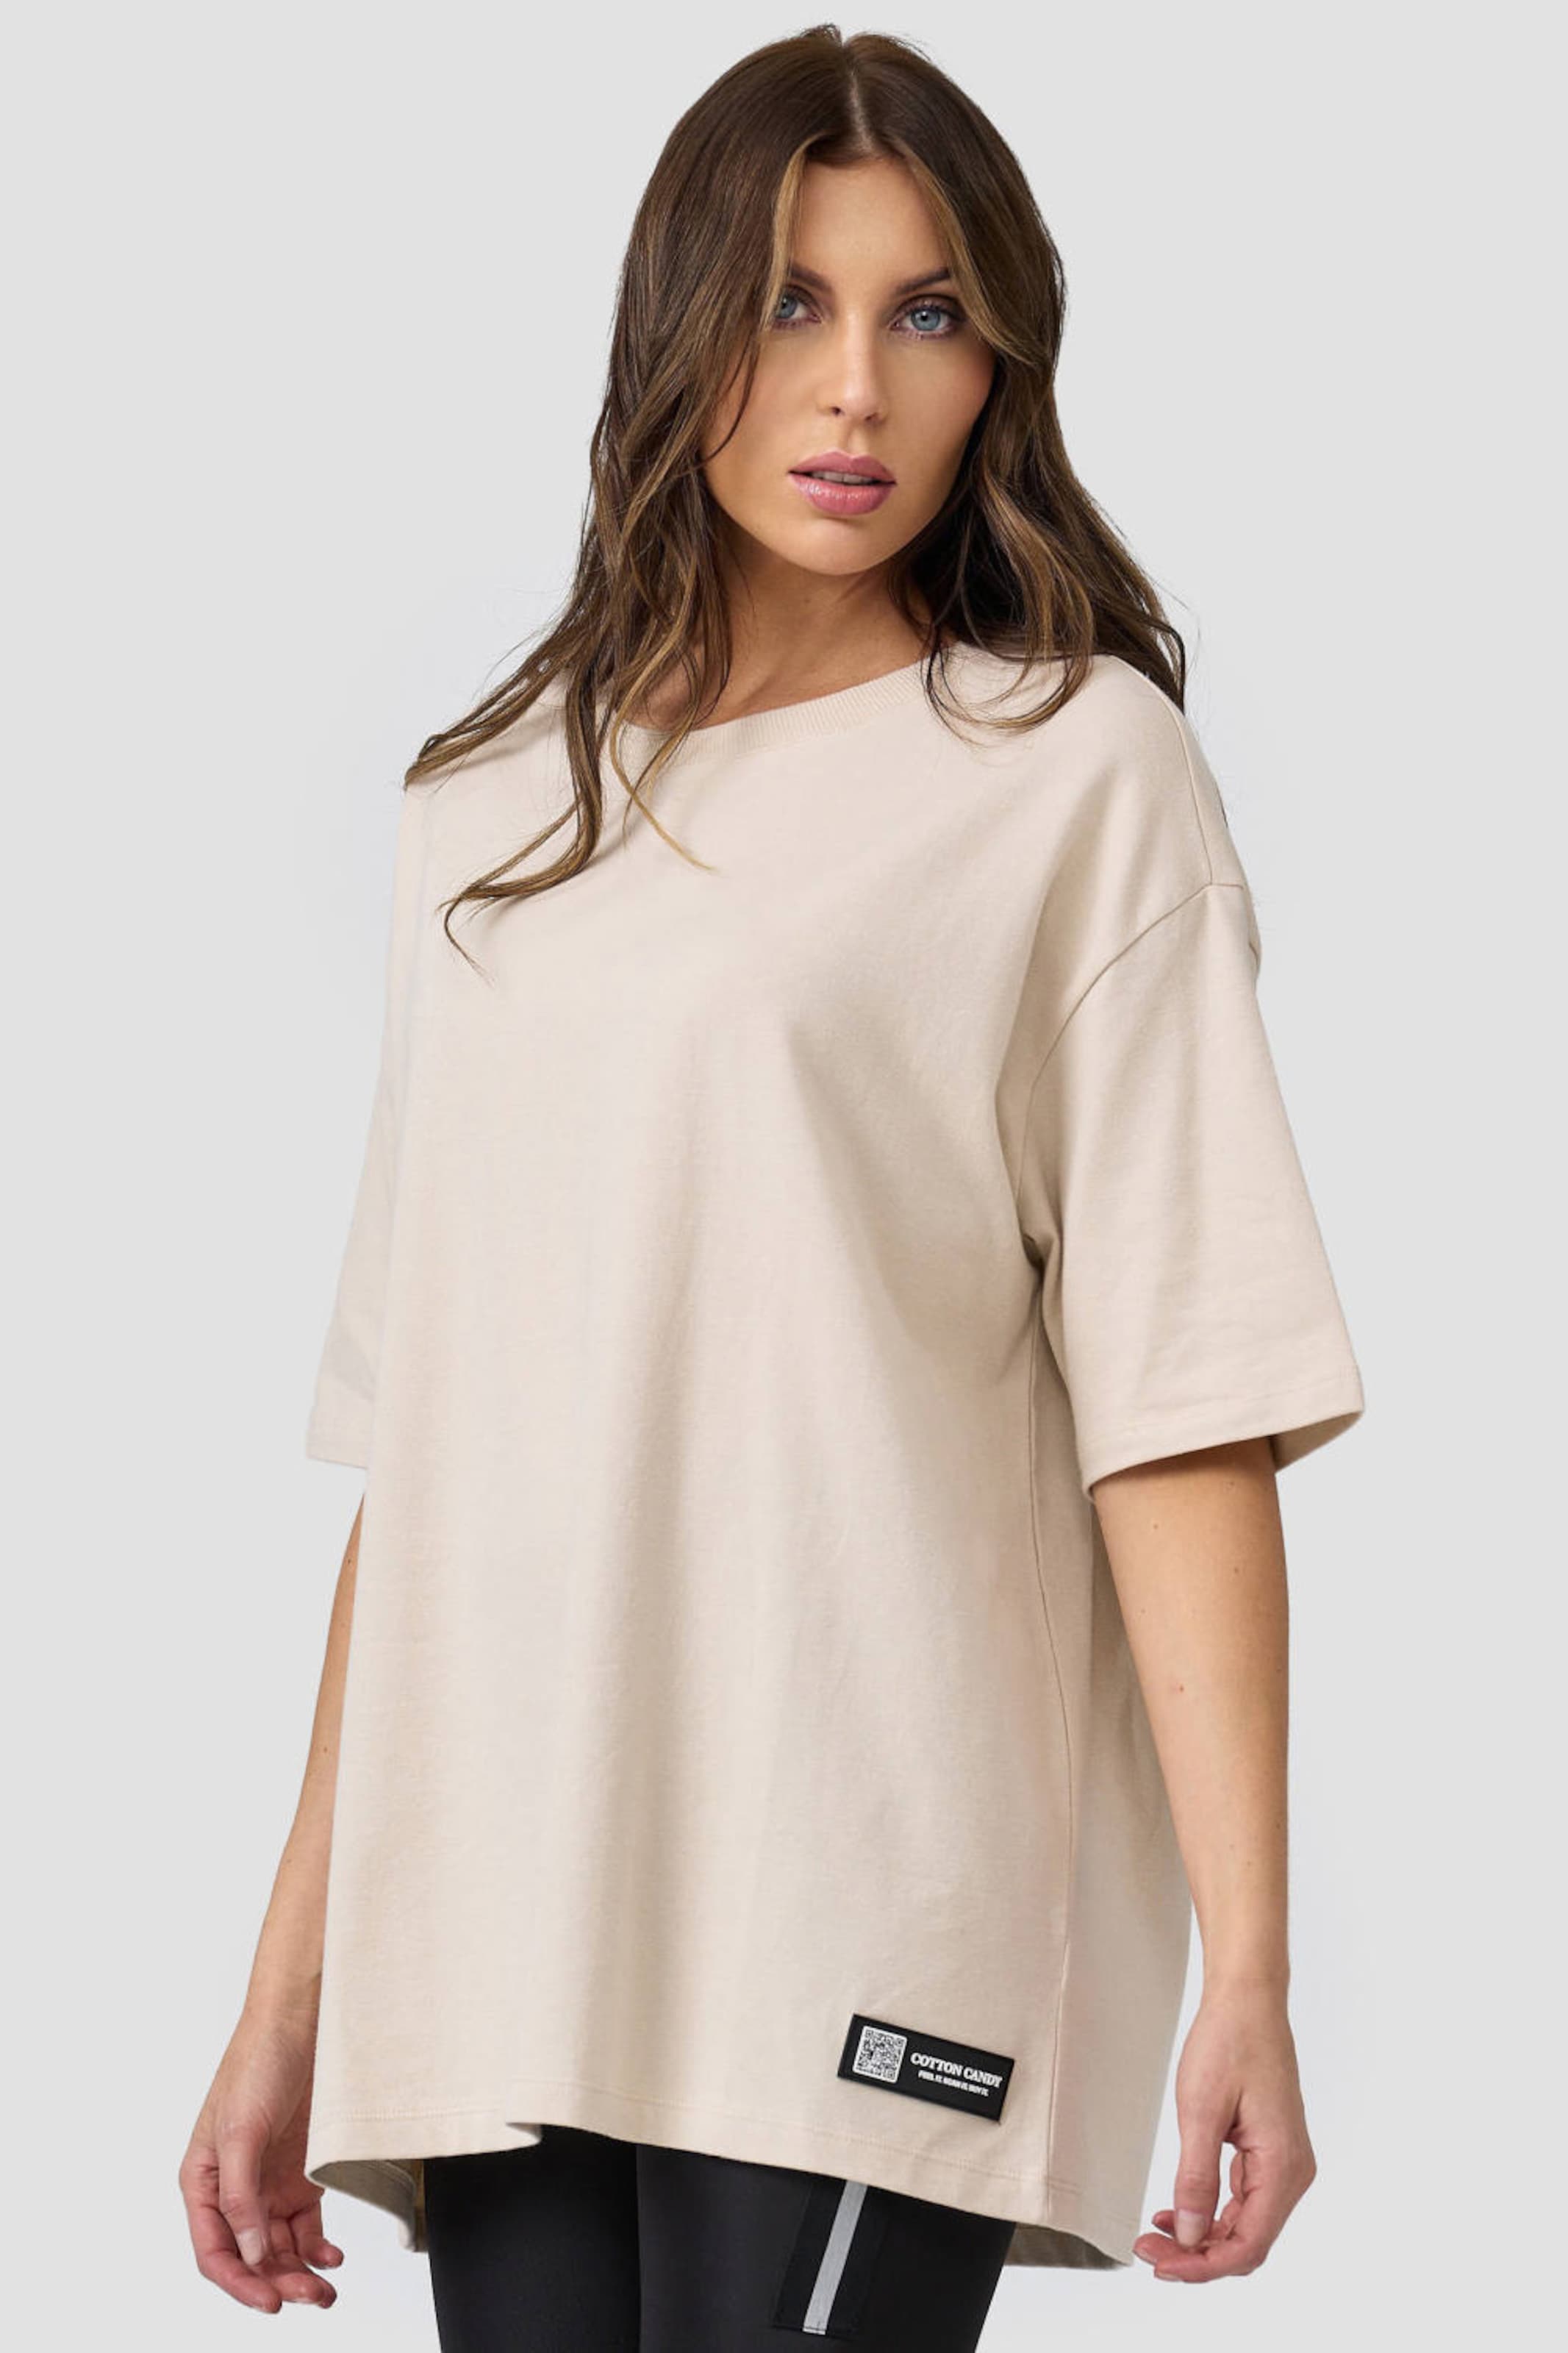 Frauen Shirts & Tops Cotton Candy Rundhals-Shirt in Beige - PK35244